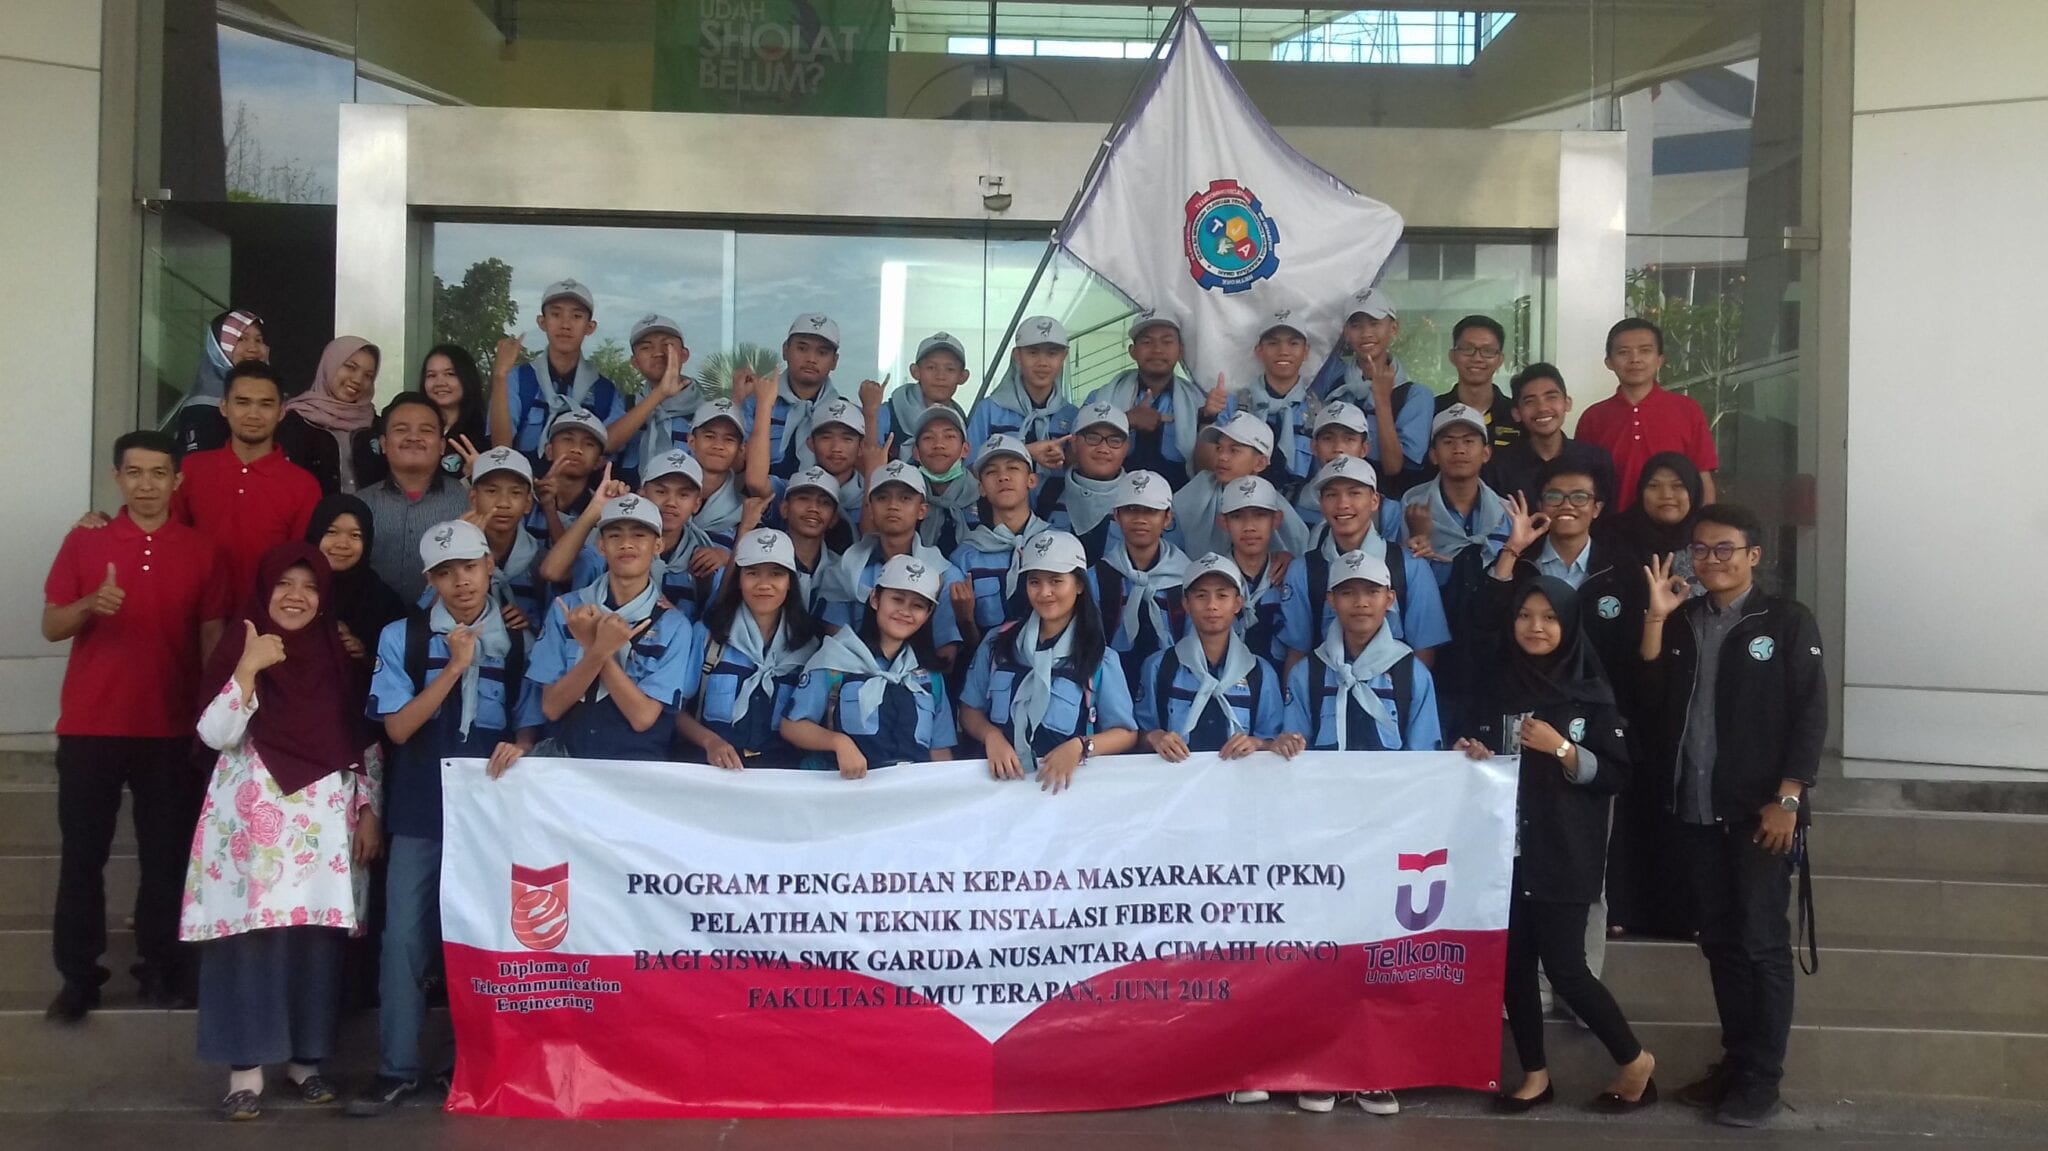 Pelatihan Teknik Instalasi Fiber Optik Bagi Siswa Smk Garuda Nusantara Cimahi (GNC)